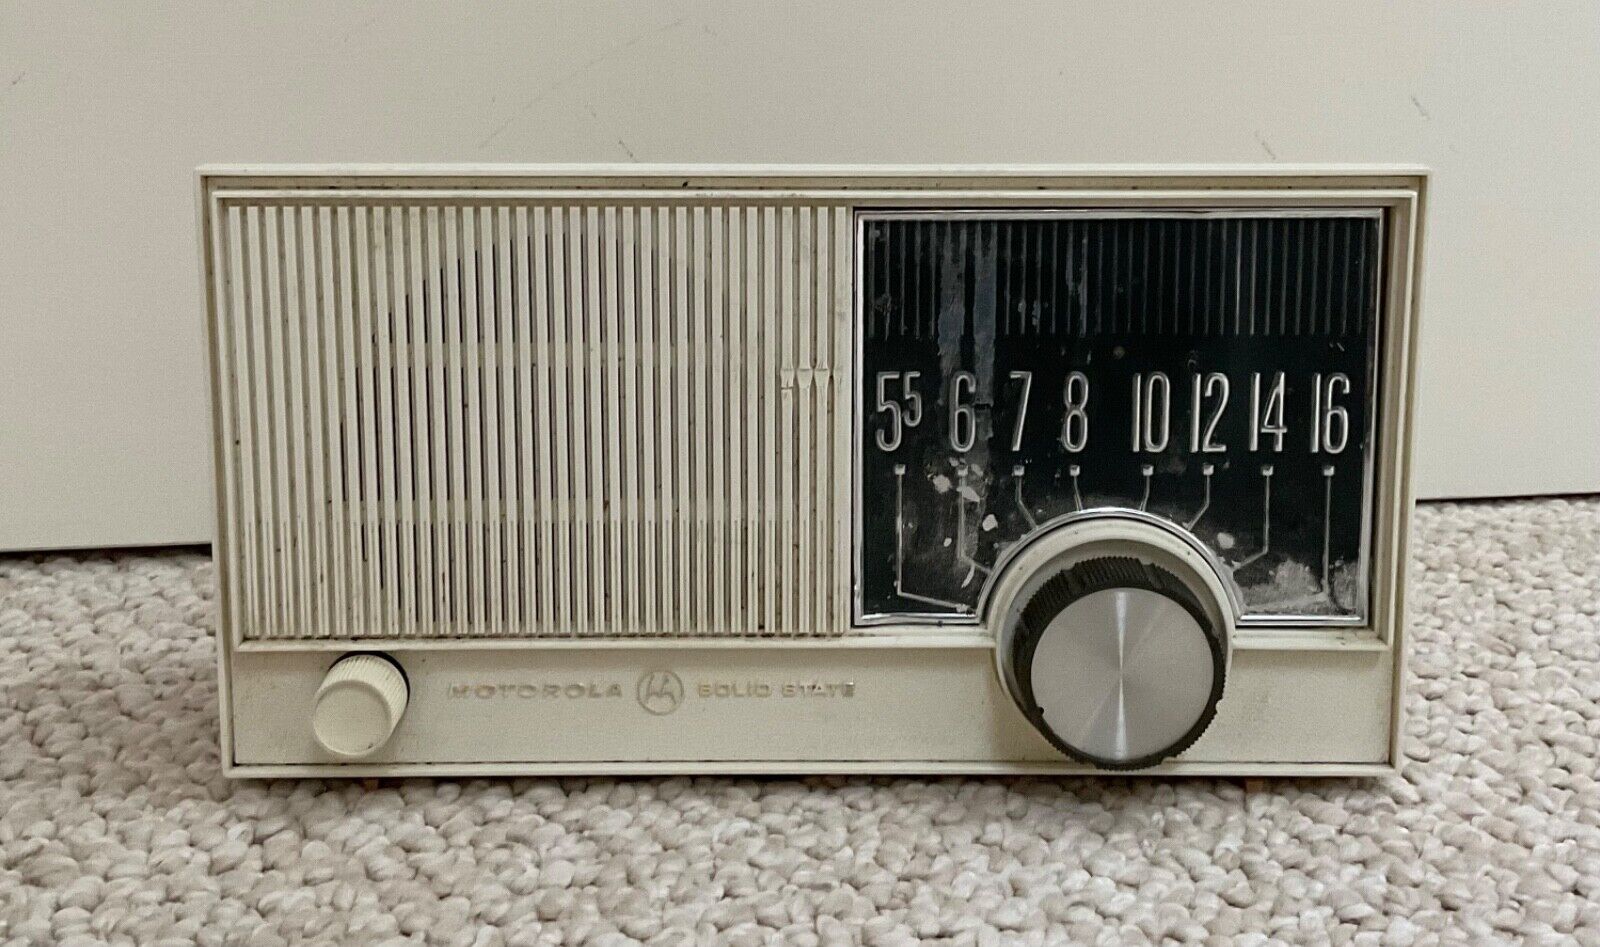 Vintage Motorola table radio model XT1BN serial number 1296